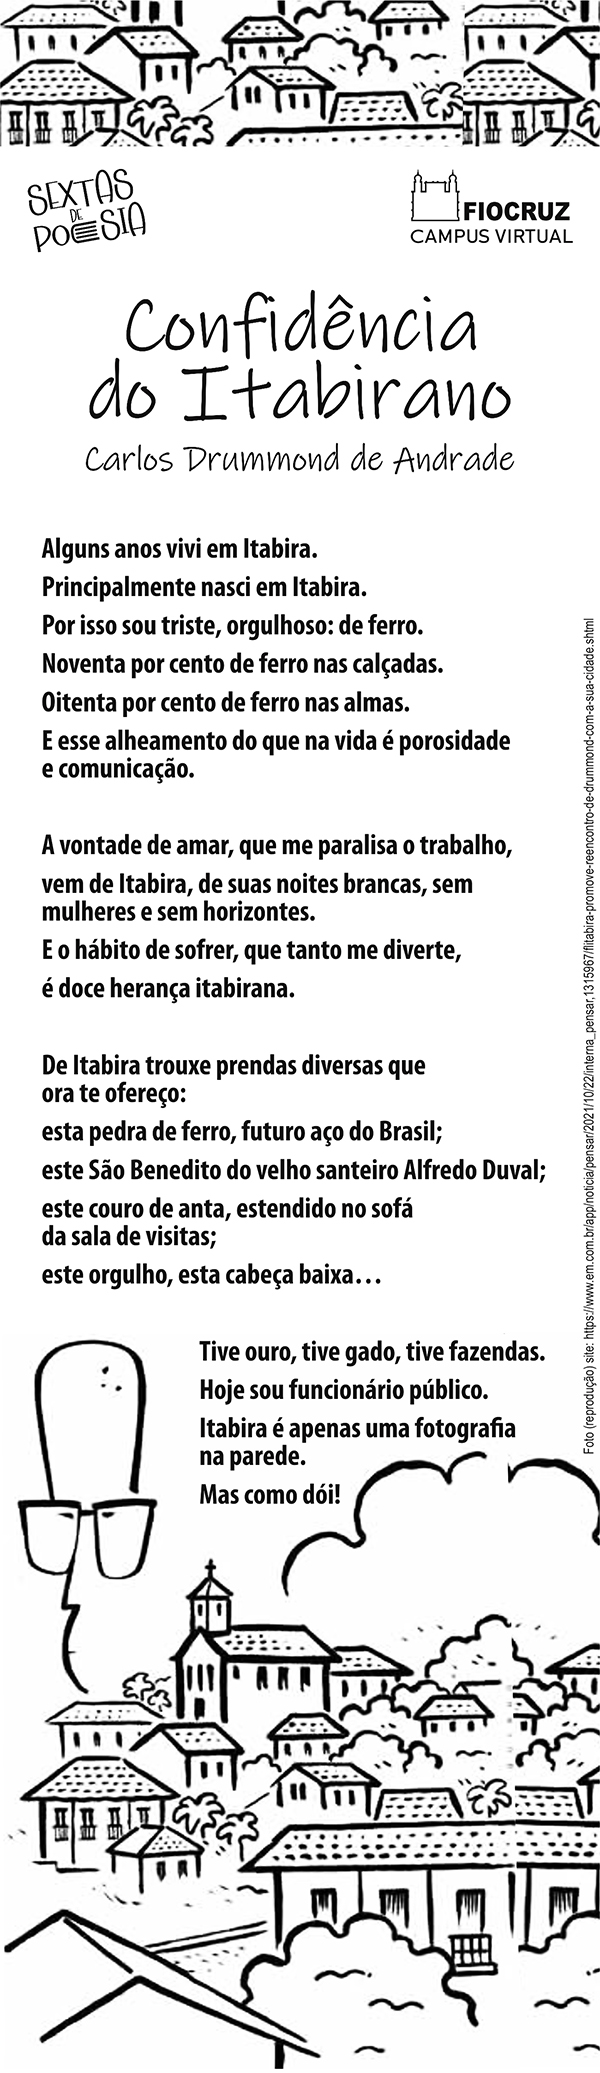 Sextas homenageia Carlos Drummond de Andrade